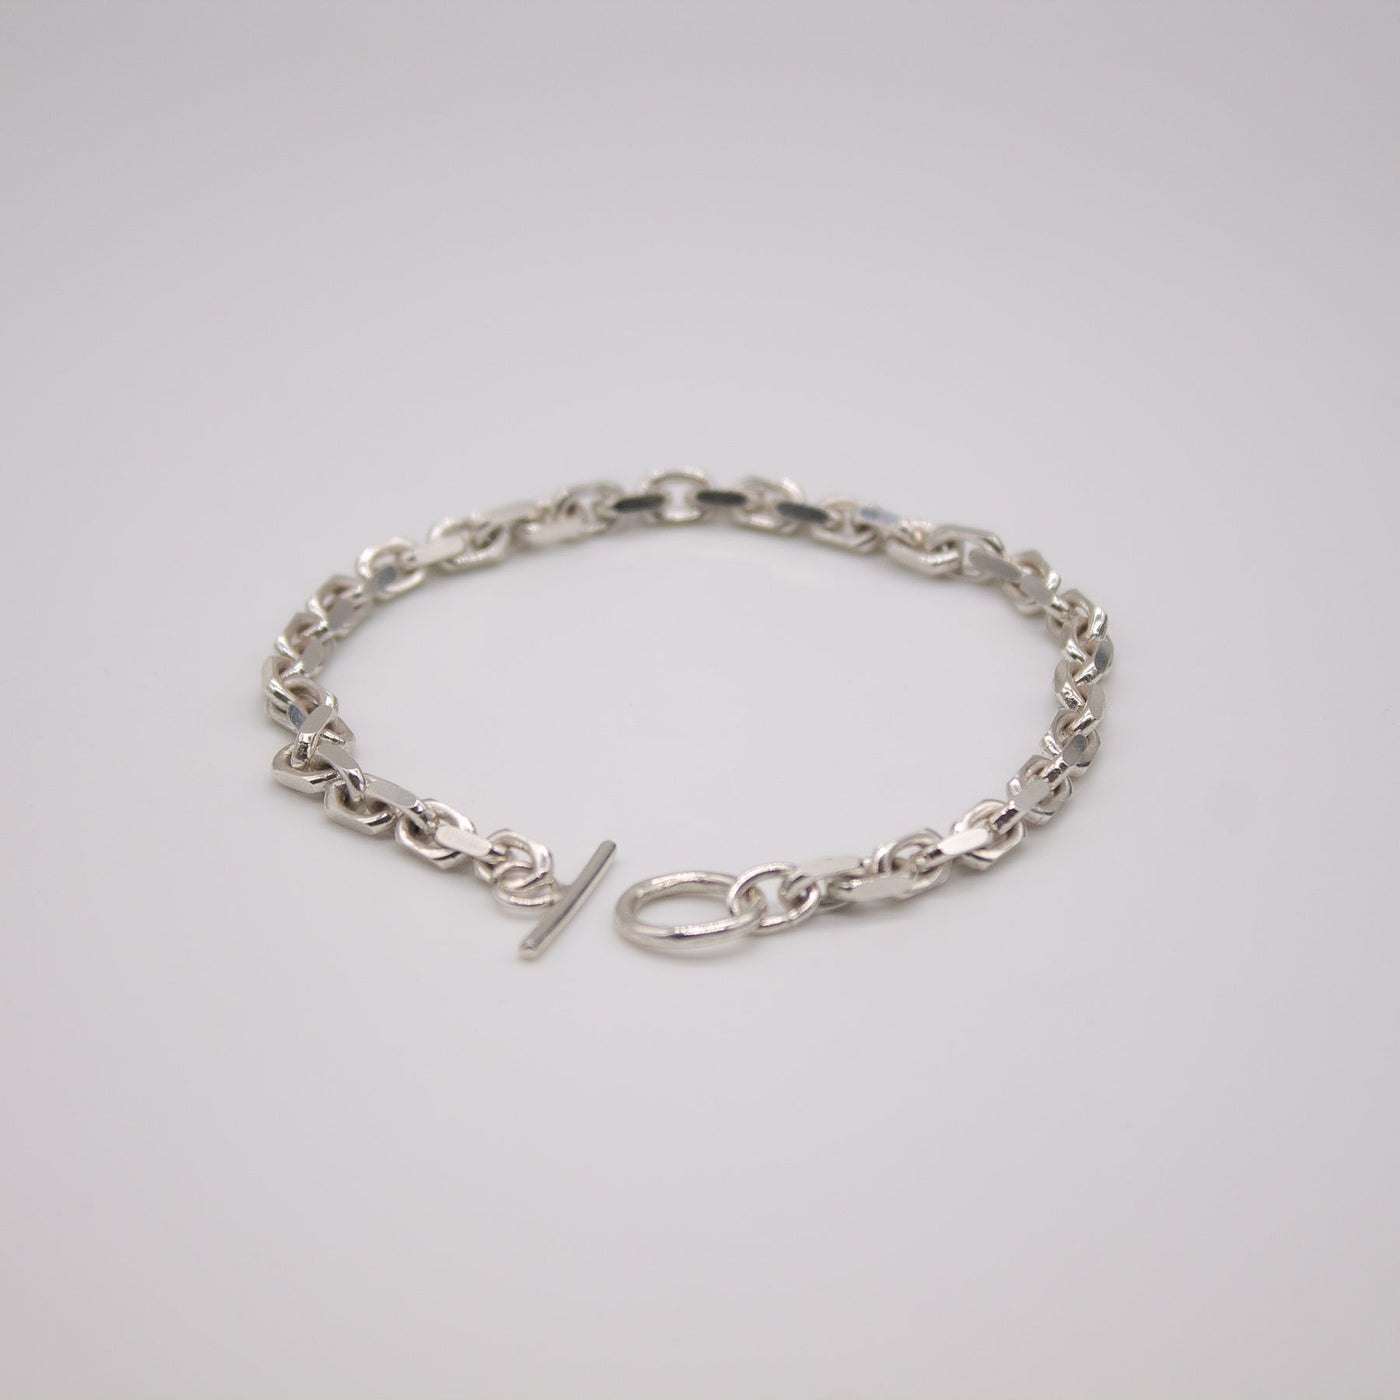 Jewelry set // LYSEFJORD earrings x VIKJA bracelet in silver